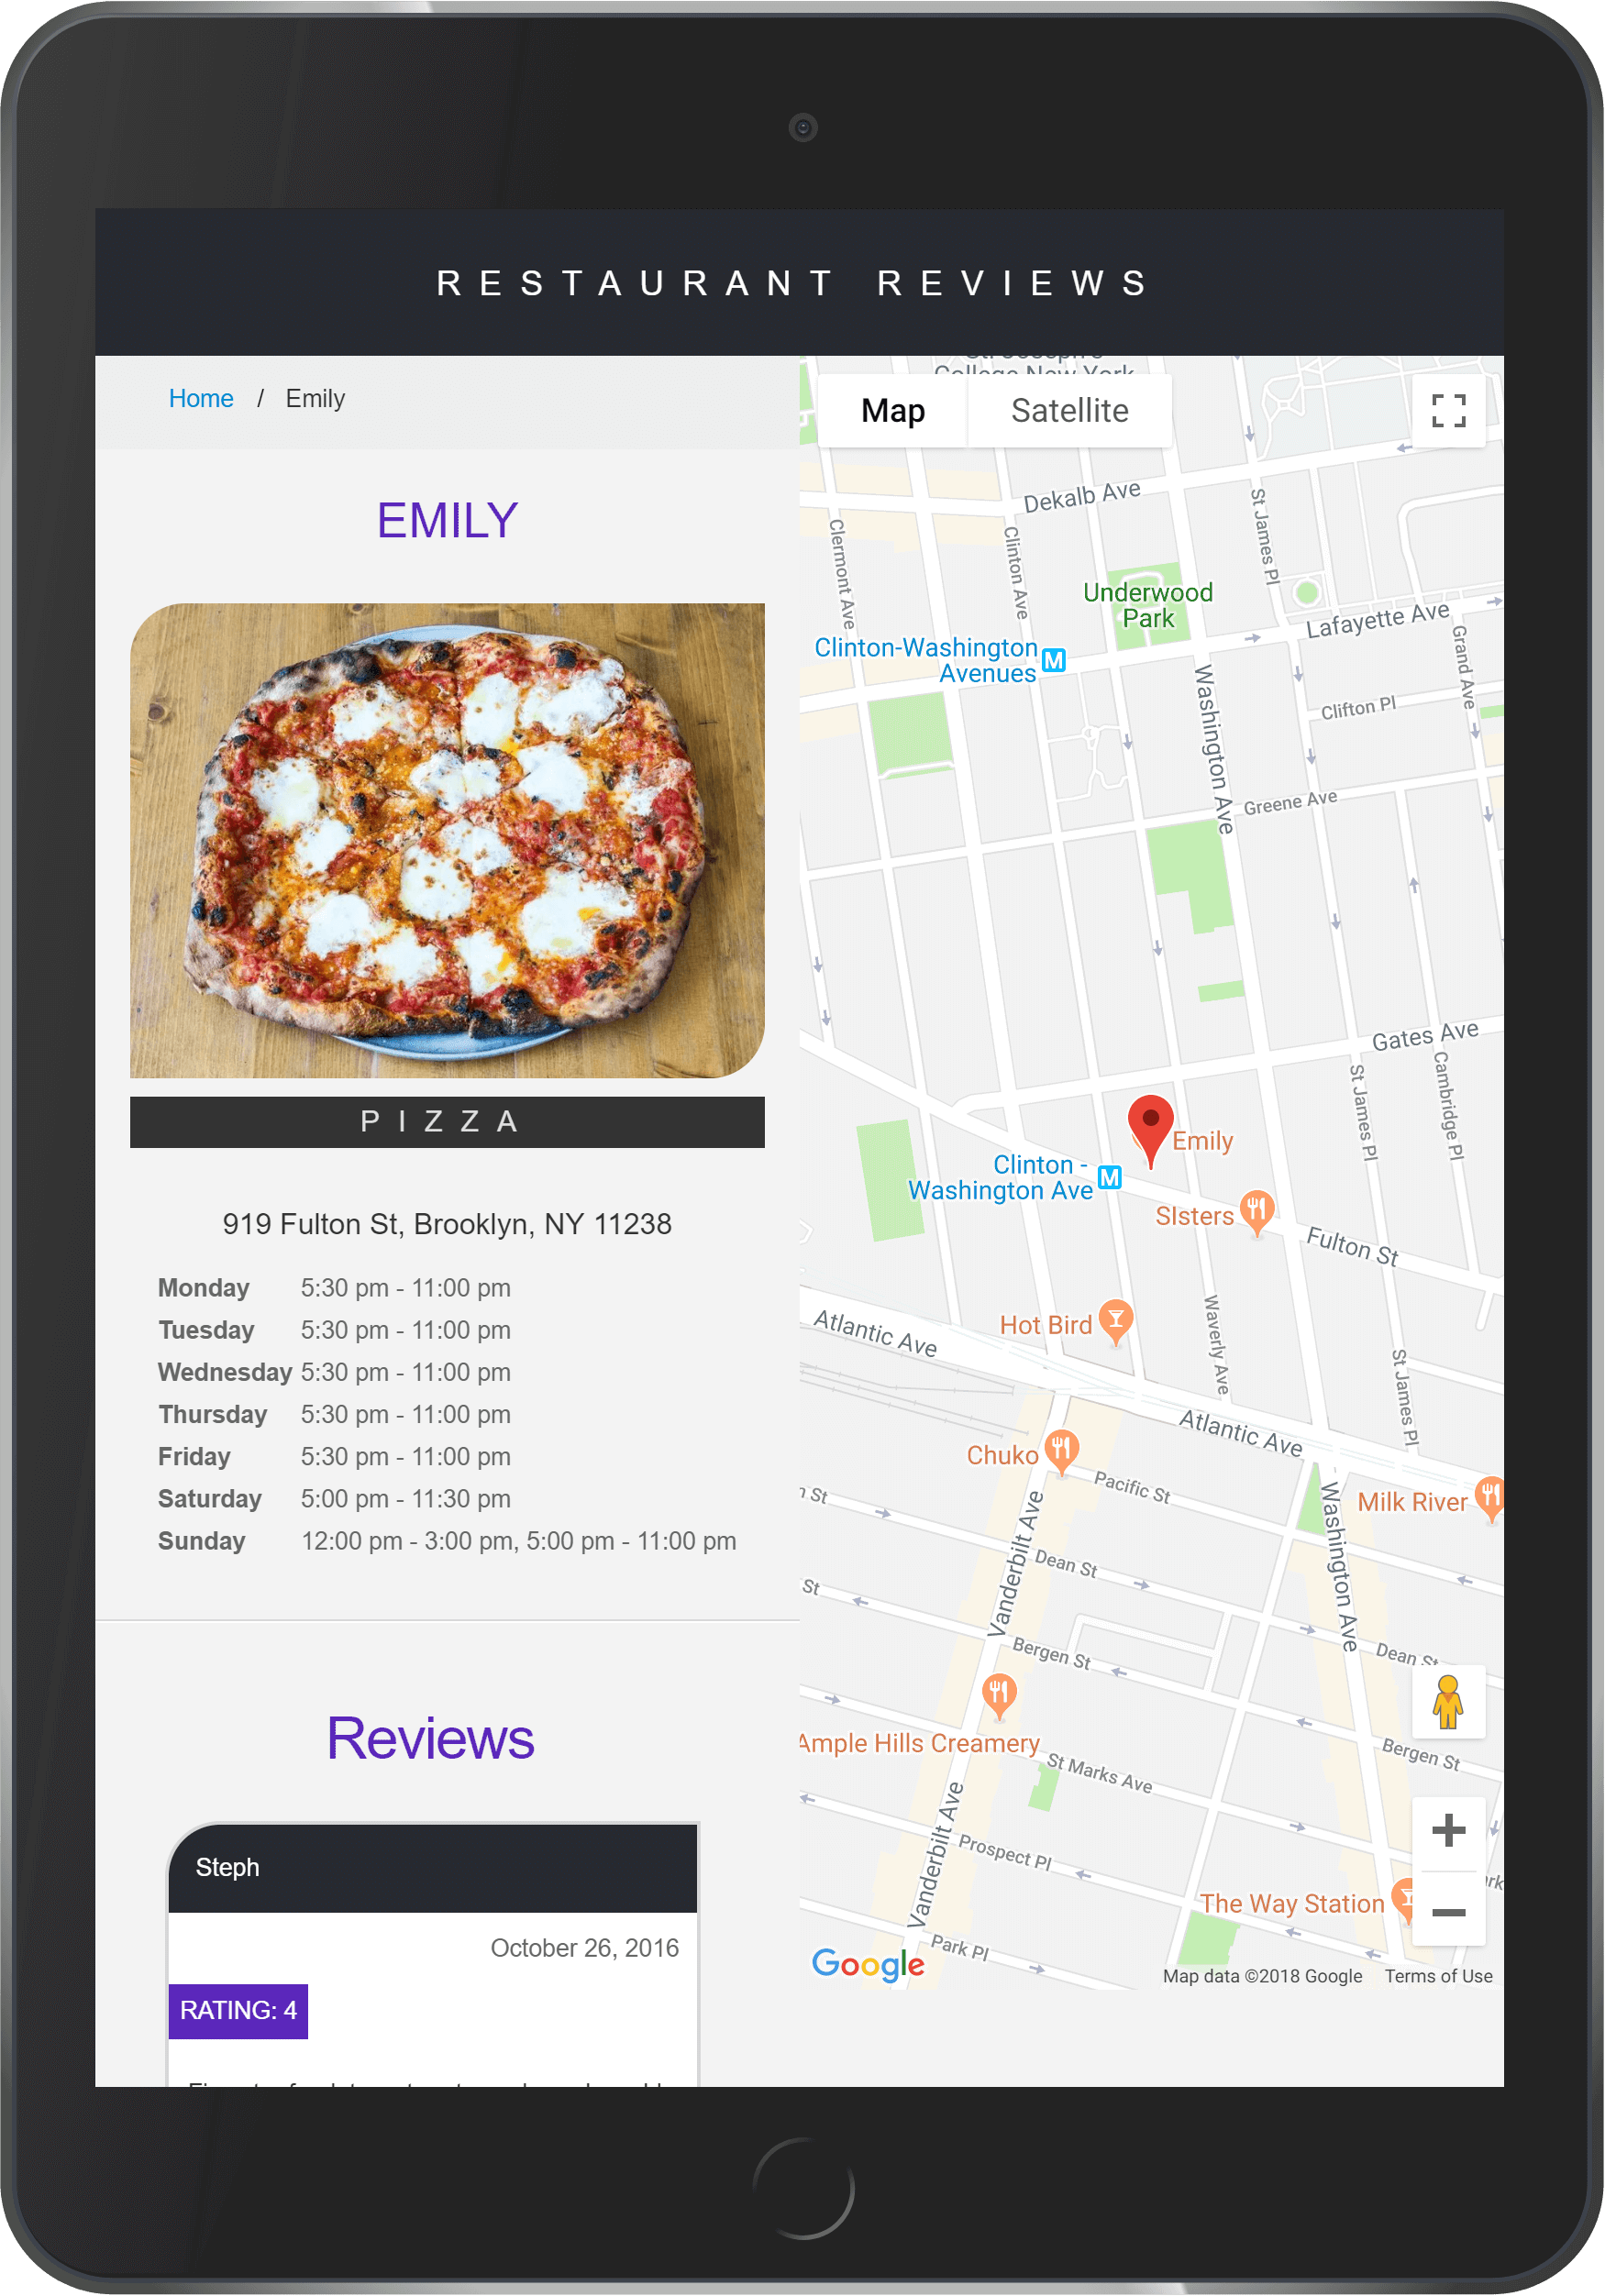 restaurants review map screenshot